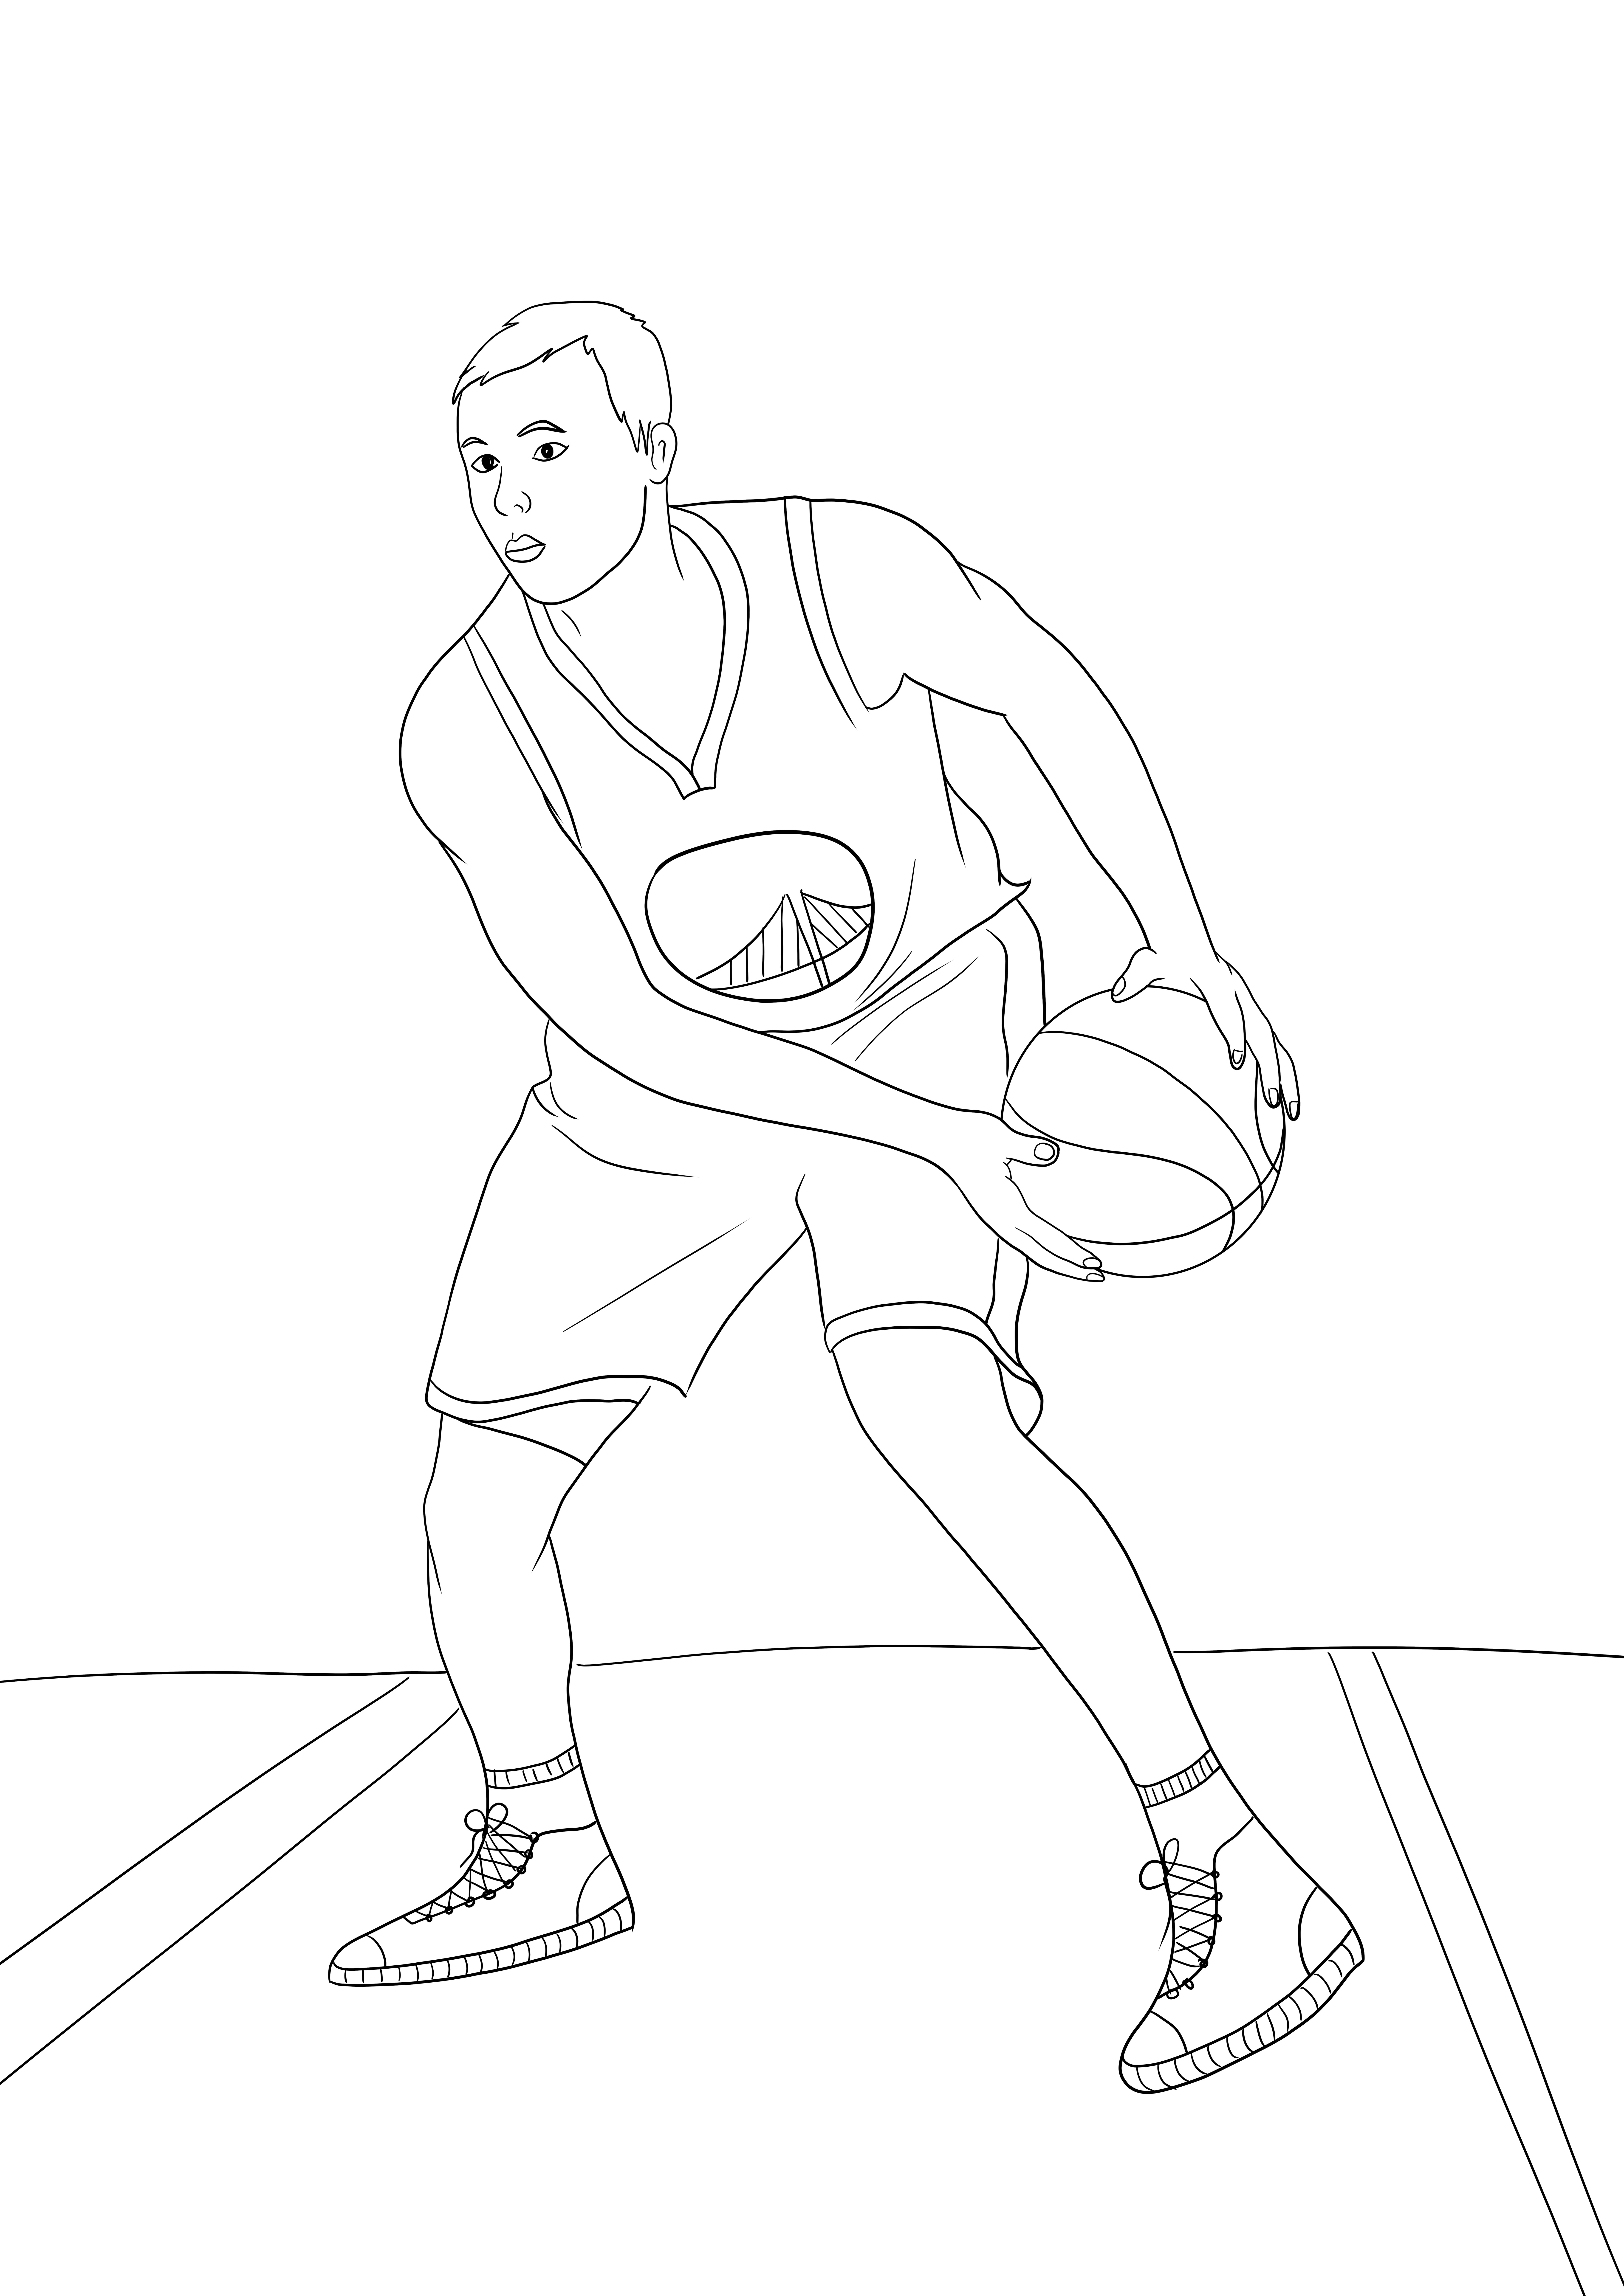 Stephen Curry az NBA-től egyszerű színező és ingyenesen letölthető kép